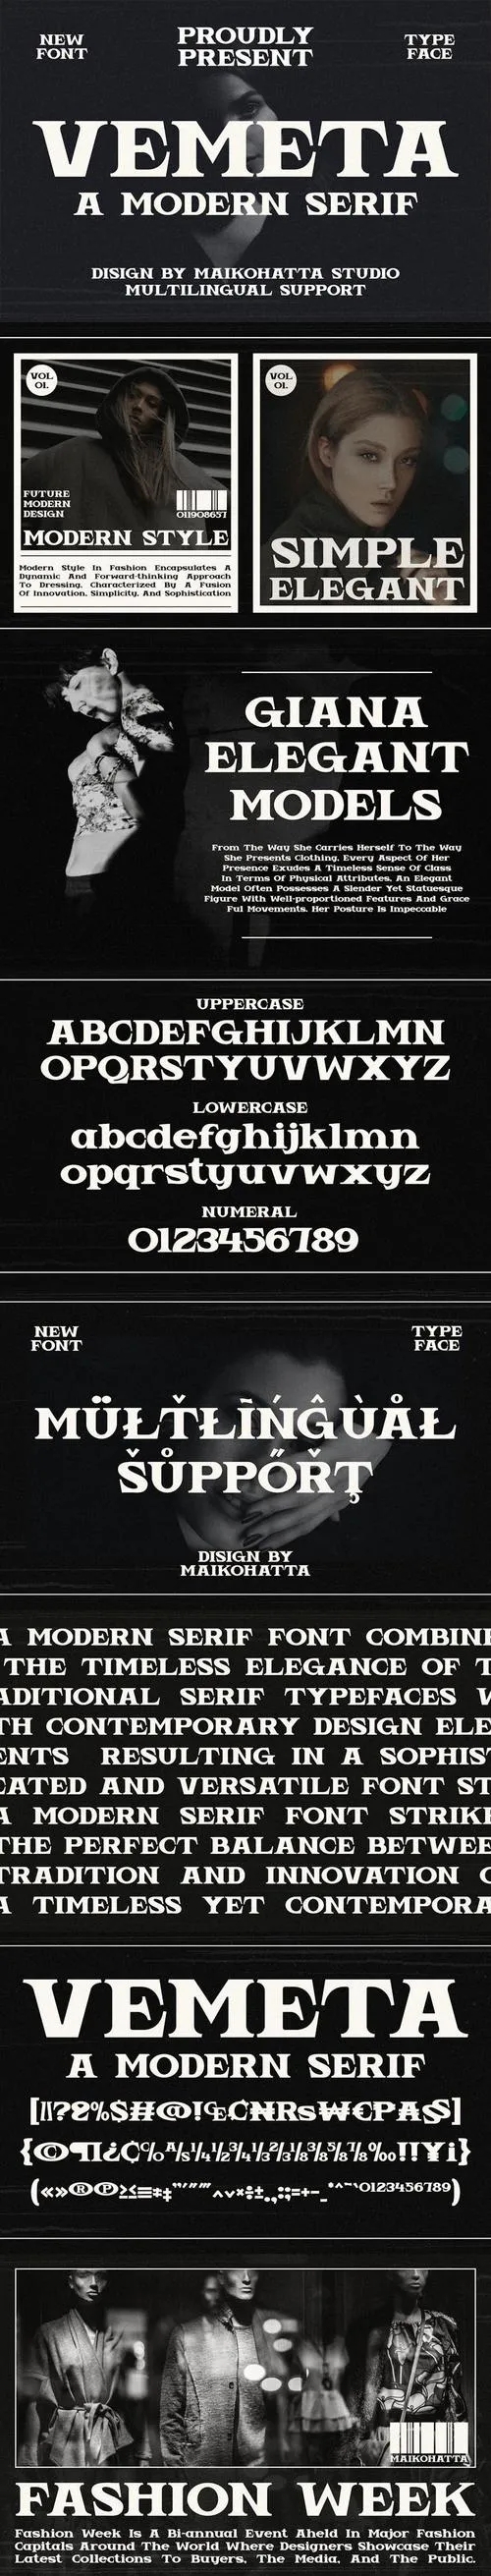 Vemeta - Modern Serif Font